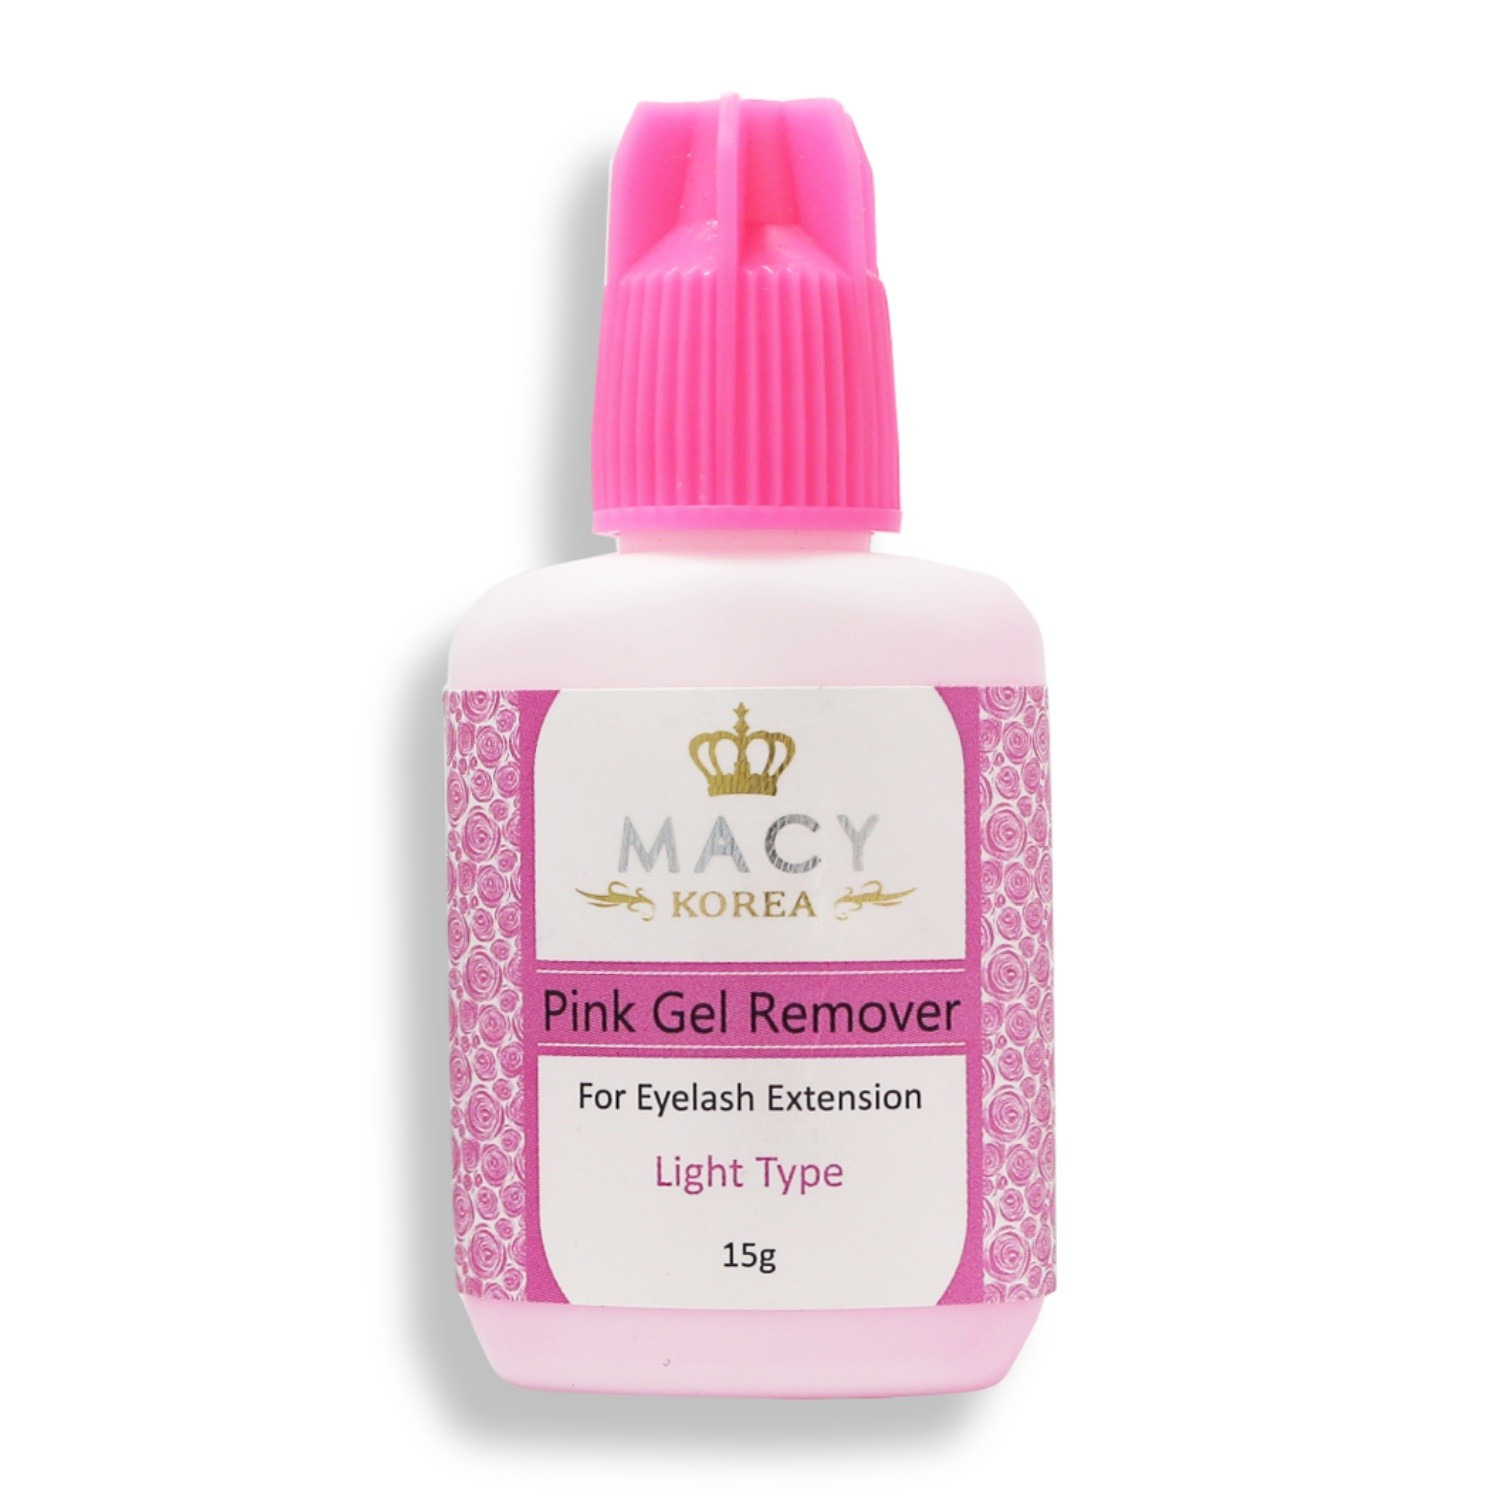 MACY Pink Gel Remover Light Type für die Wimpernverlängerung | Remover für Lash Extension | geeignet für Allergiker | 15g